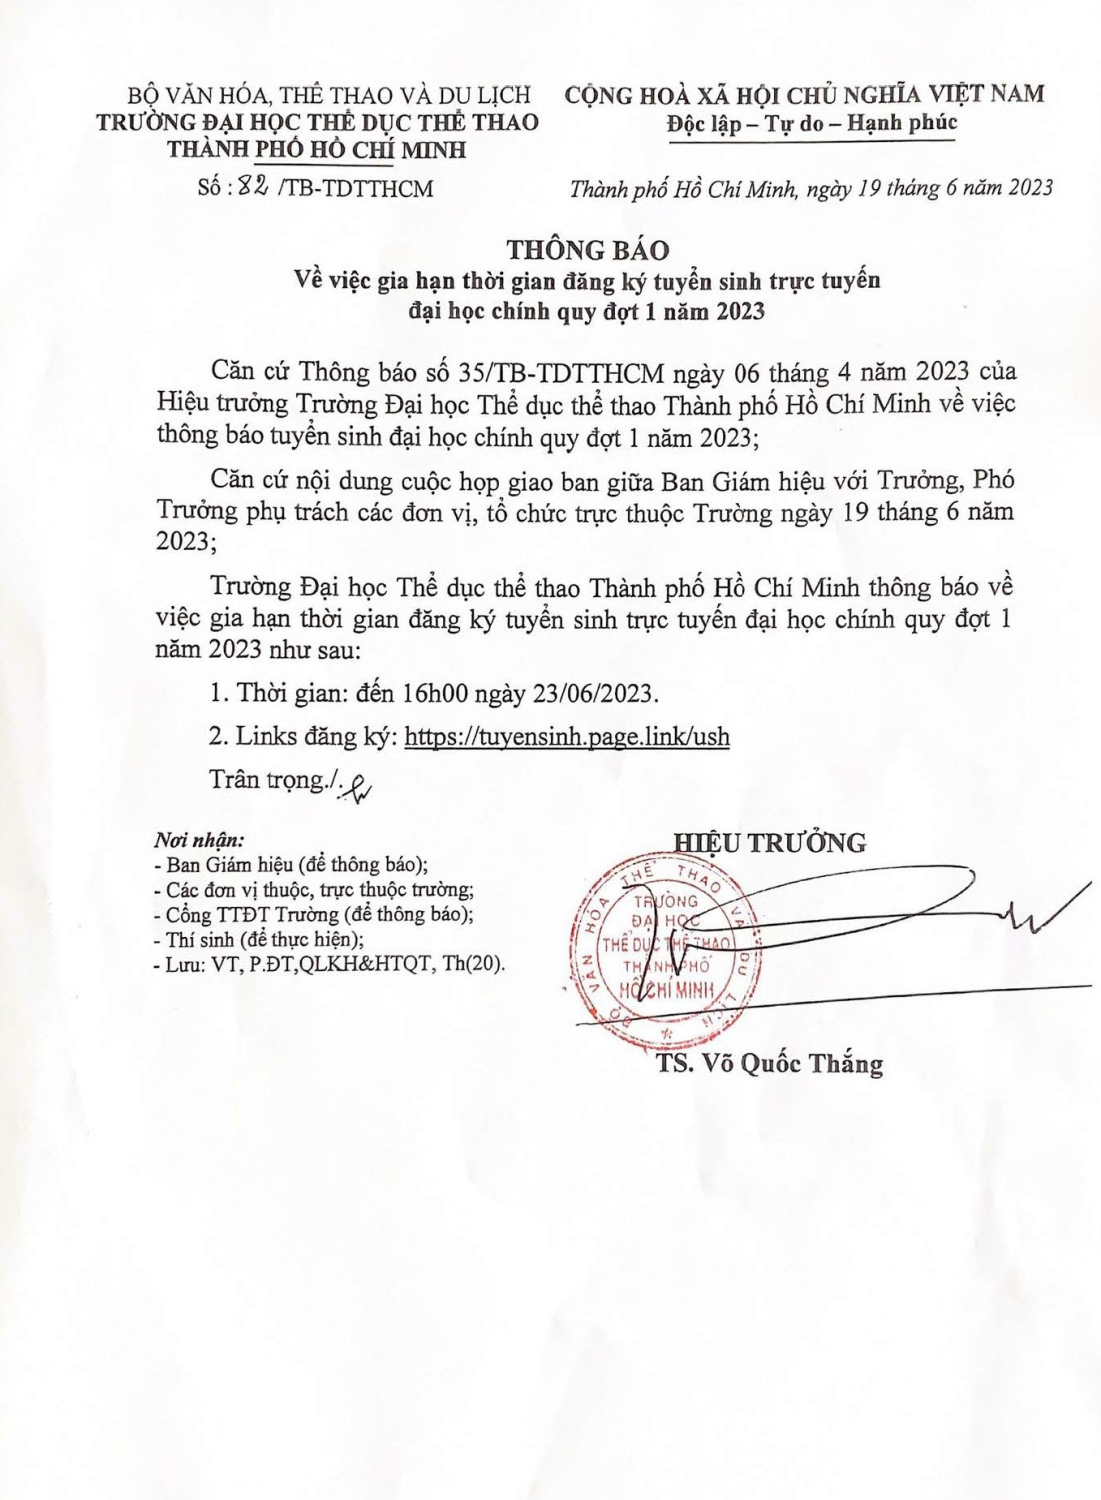 thong bao page 3